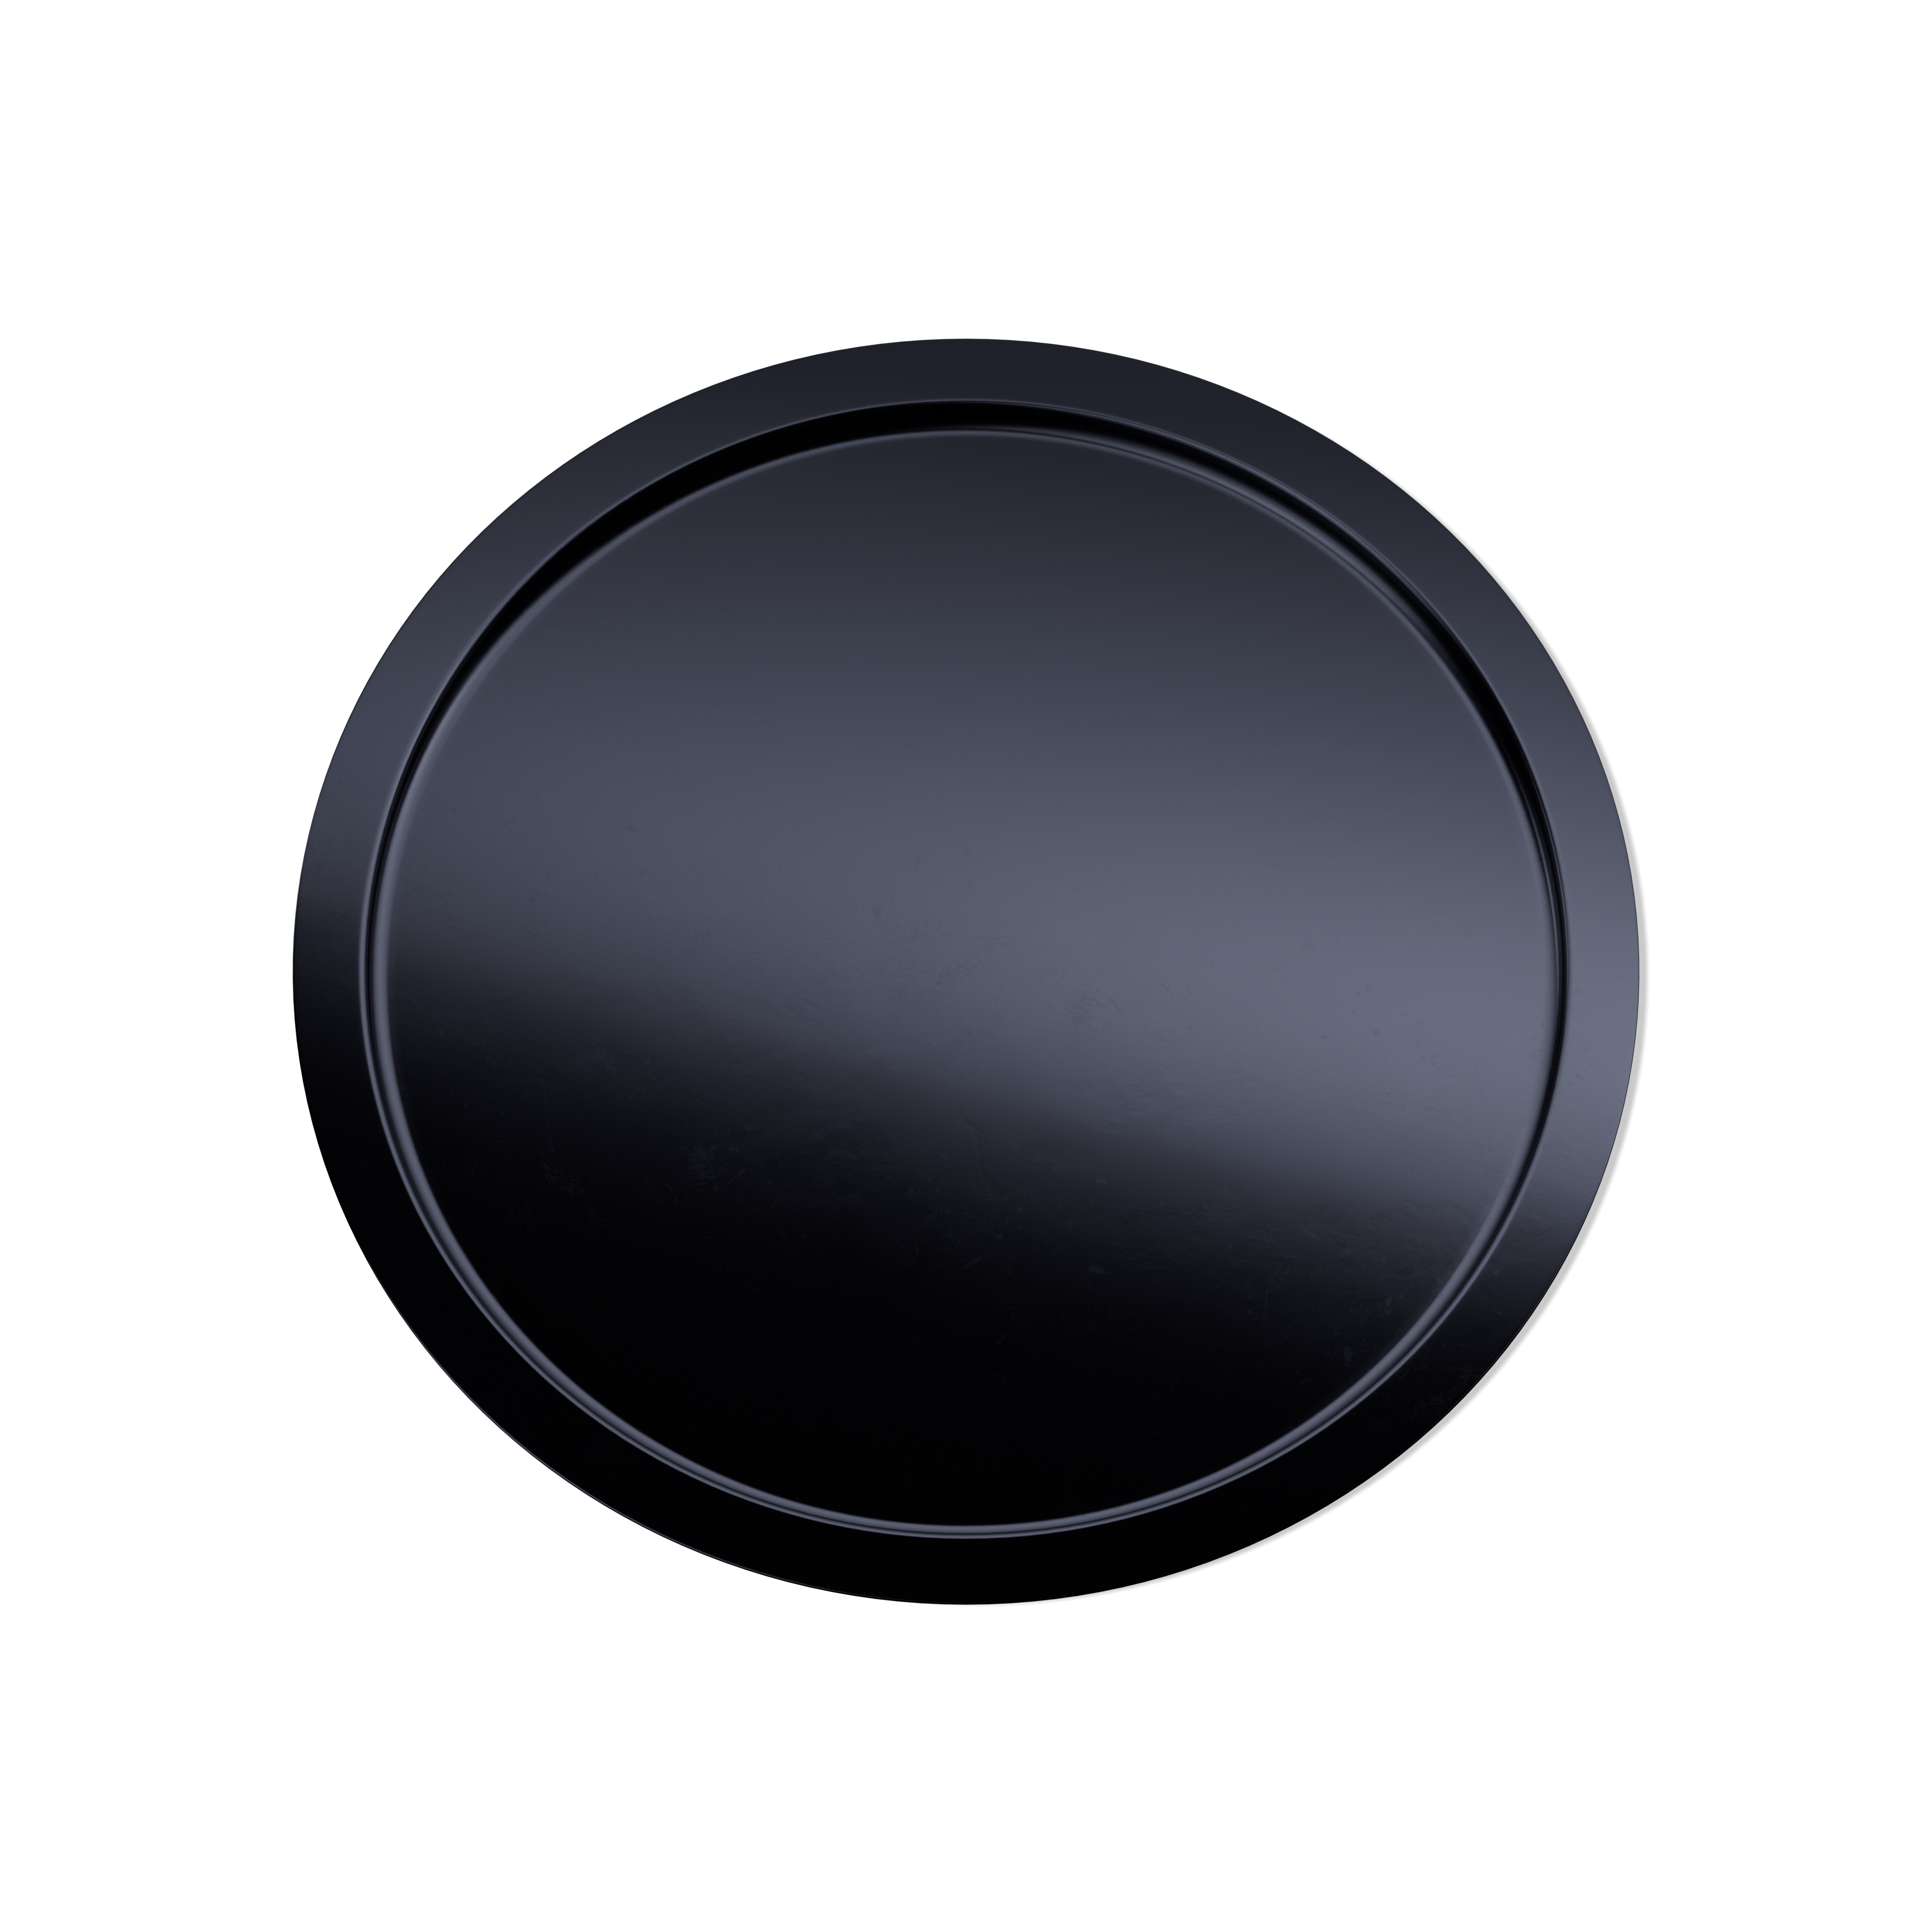 Disc liner, A-pet, black (Sirius 200)